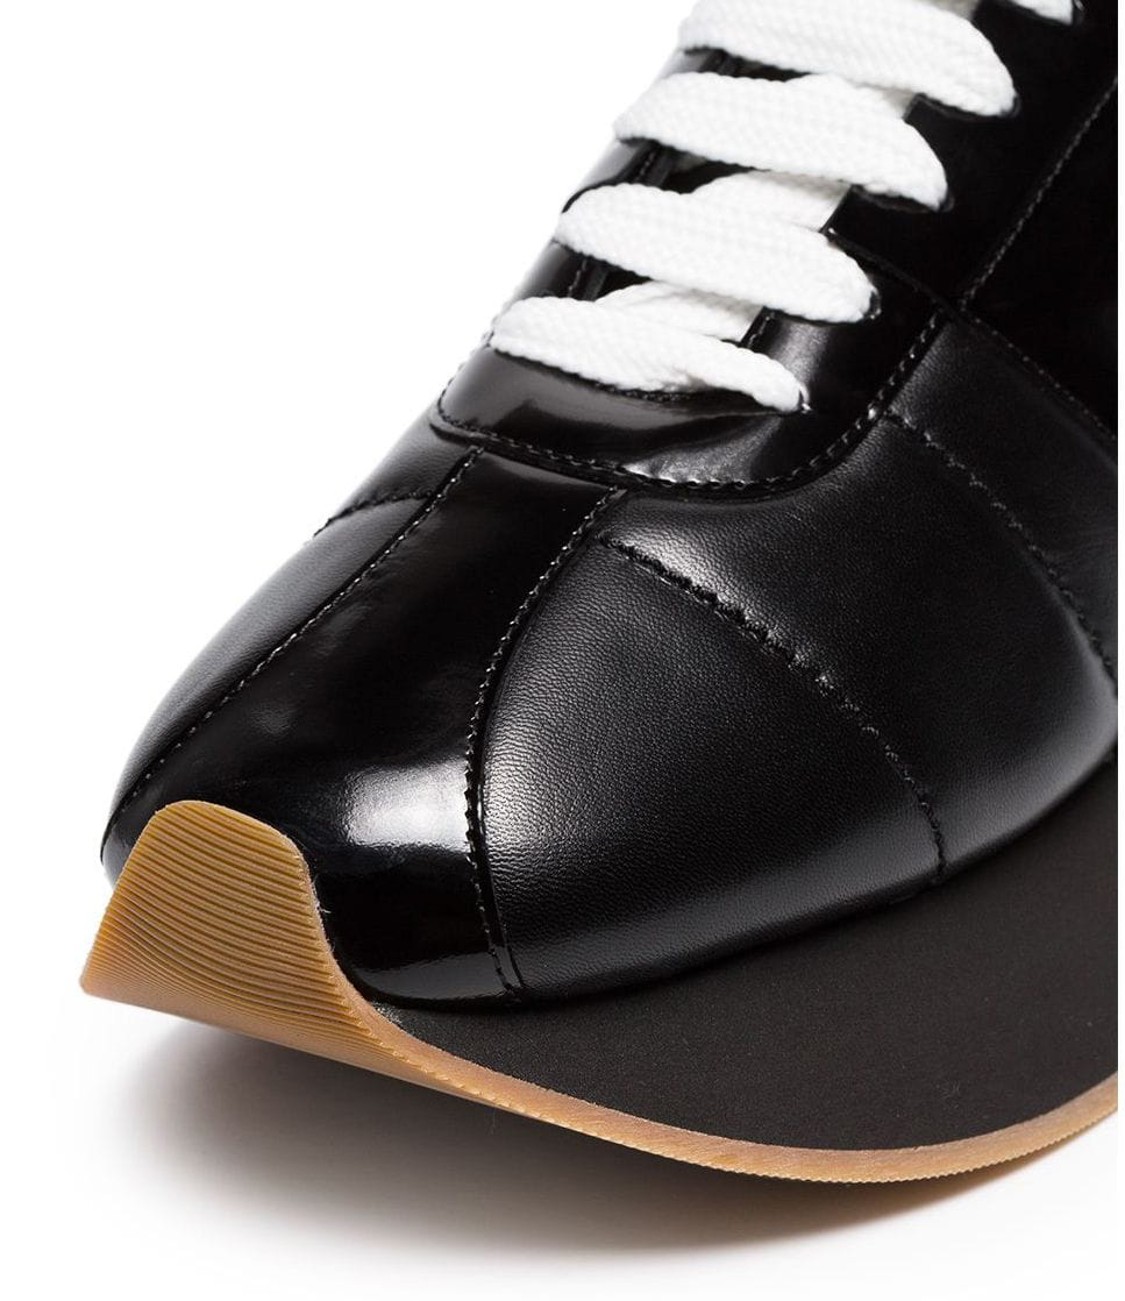 shop Marni Sales Scarpe: Sneakers Marni, modello big foot, in pelle nera, suola in gomma nera, stringhe a contrasto bianche.

Composizione: 100% pelle.
Suola: 100% gomma.
 number 1620